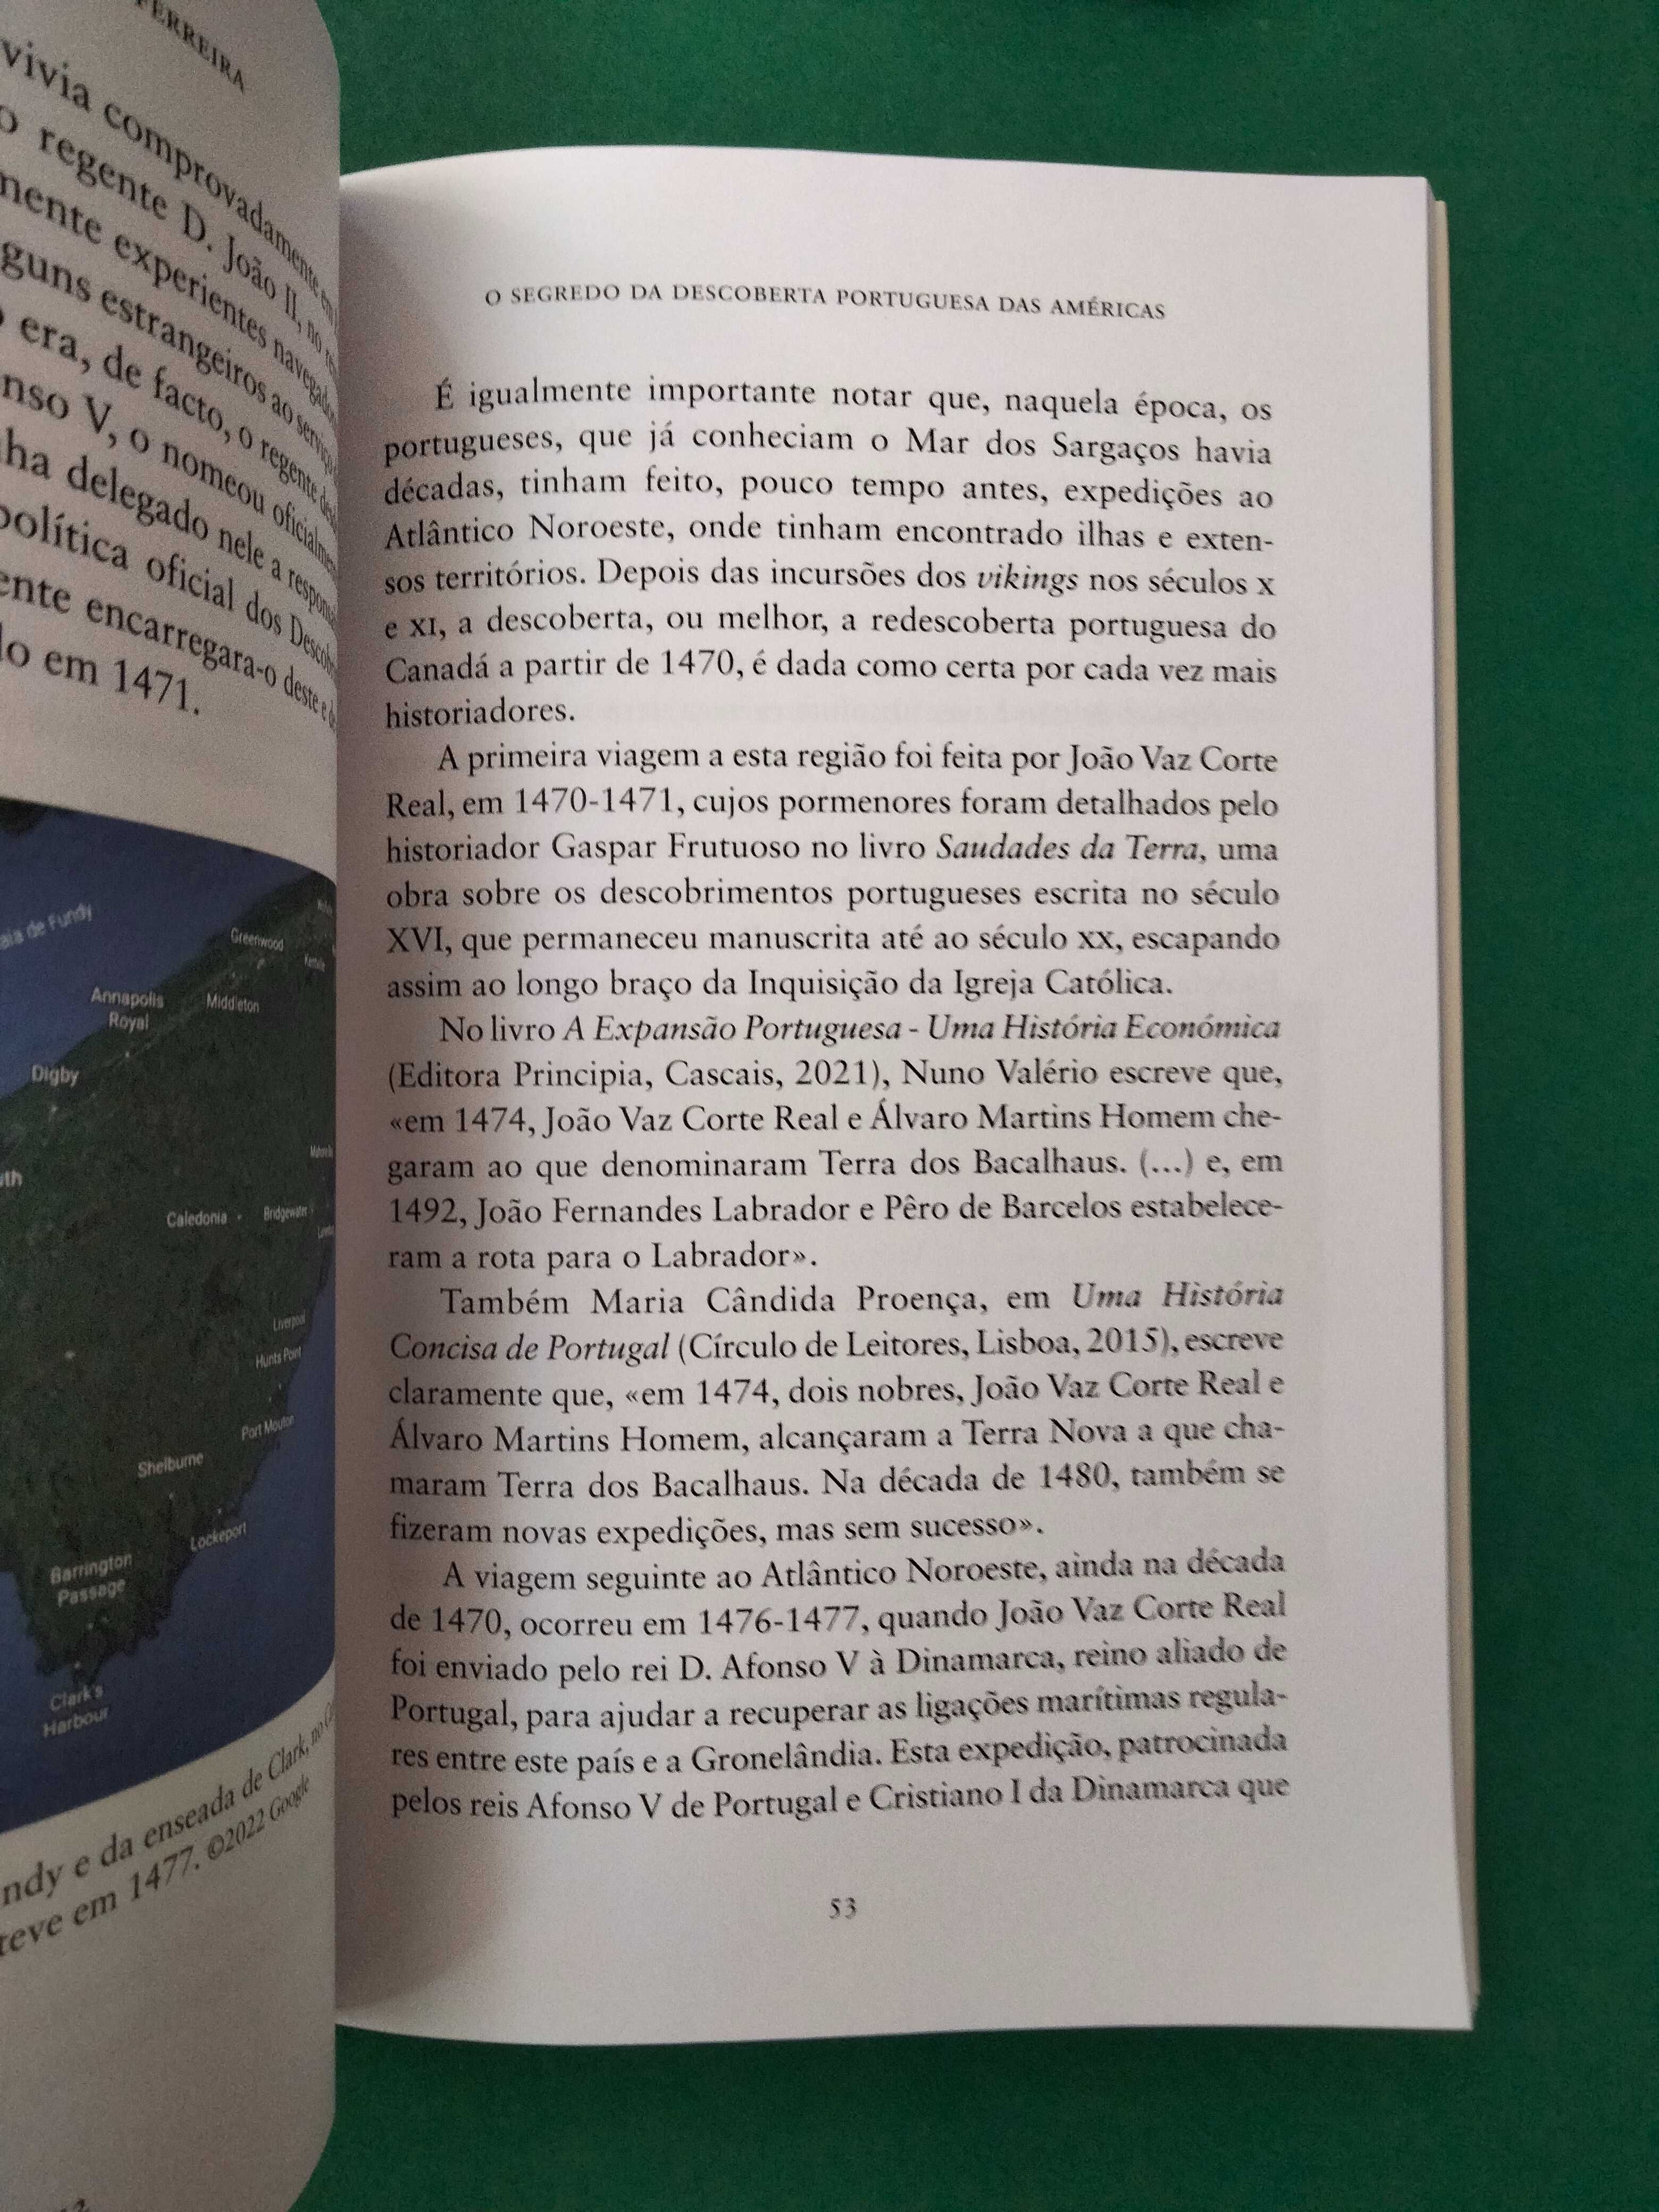 O Segredo da Descoberta Portuguesa das Américas - José Gomes Ferreira